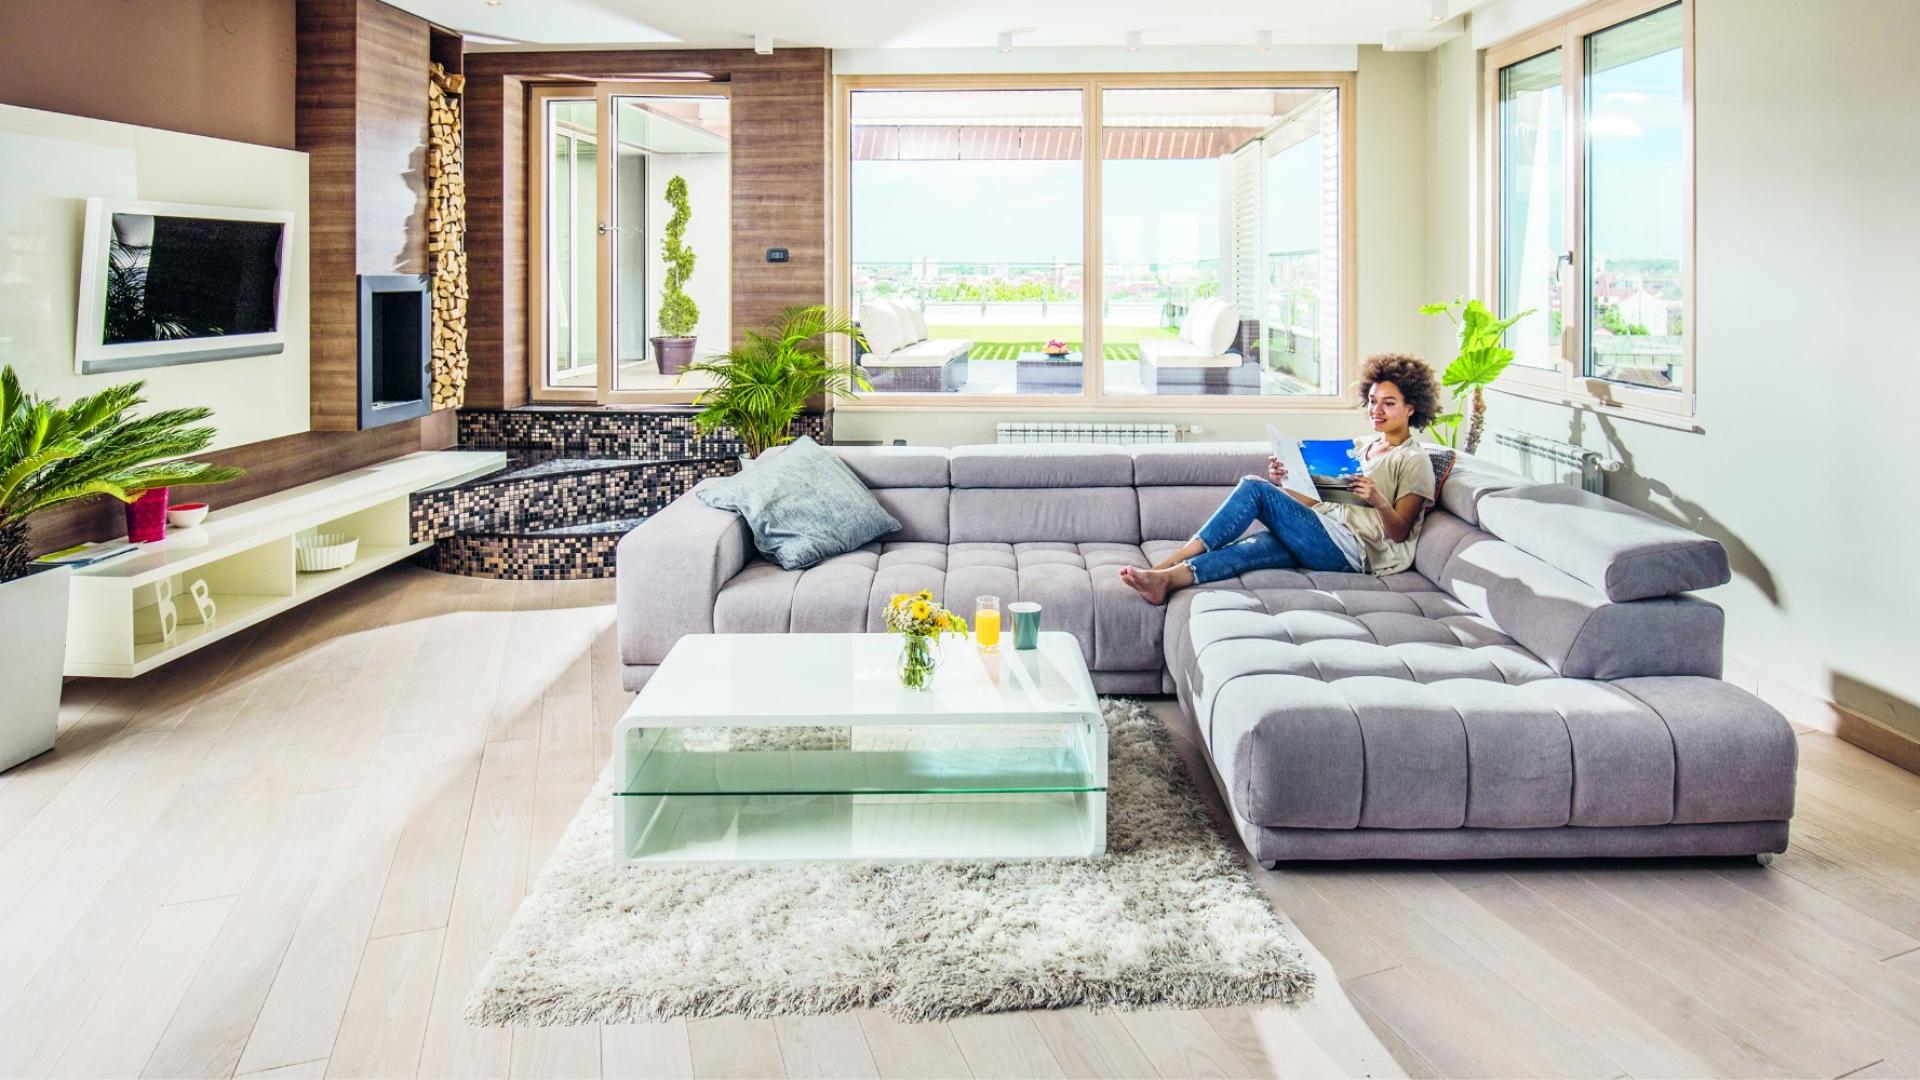 Auf dem Bild ist eine Frau zu sehen, die in ihrem schönen Wohnzimmer auf einer großen, grauen Couch sitzt.